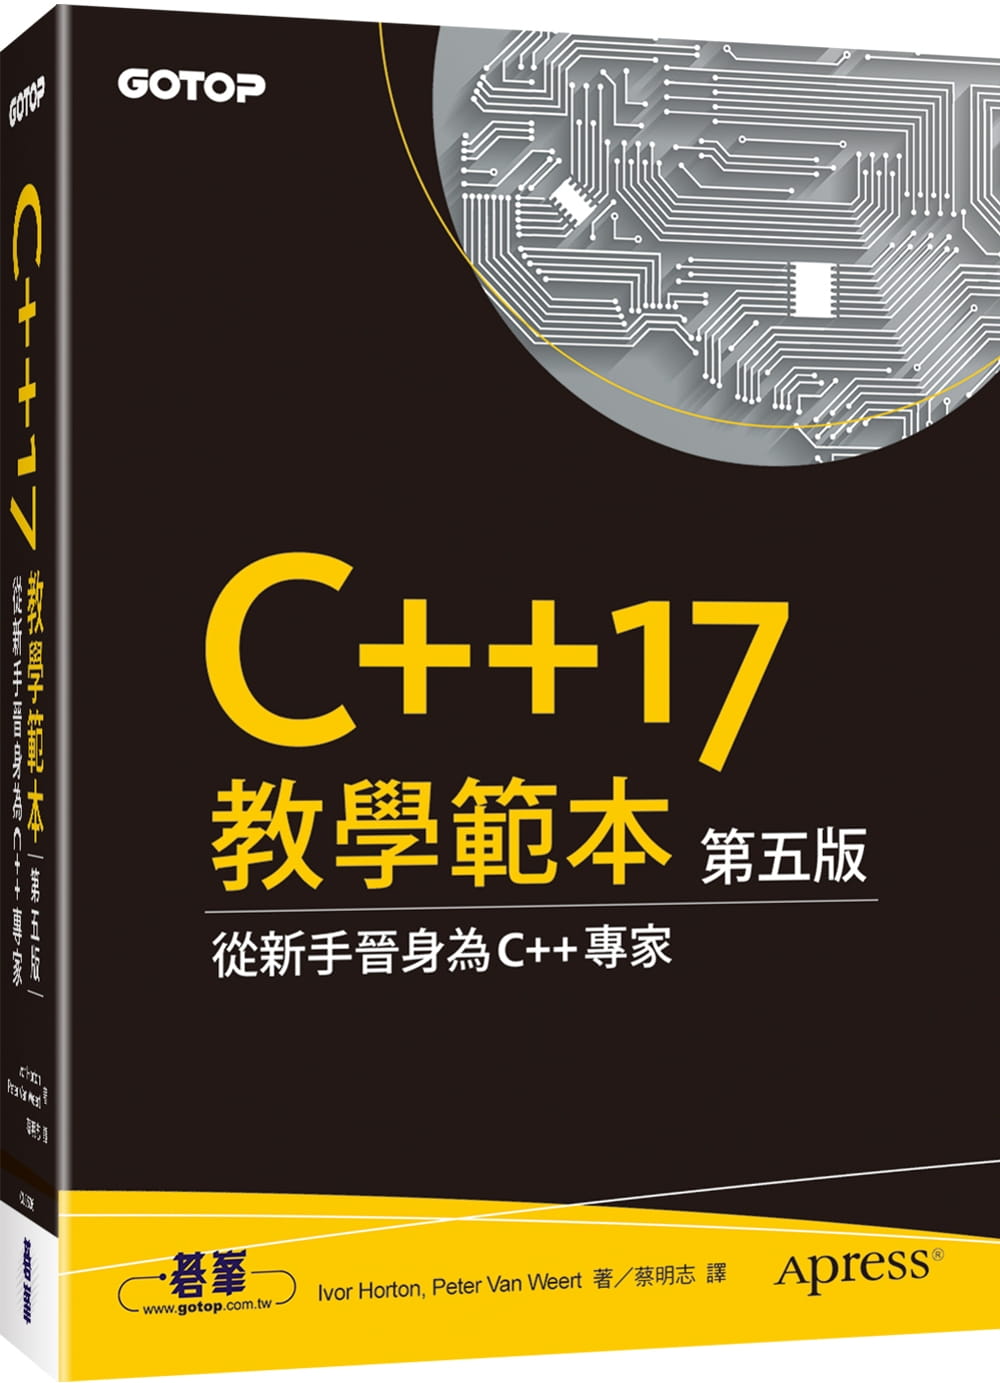 C++17